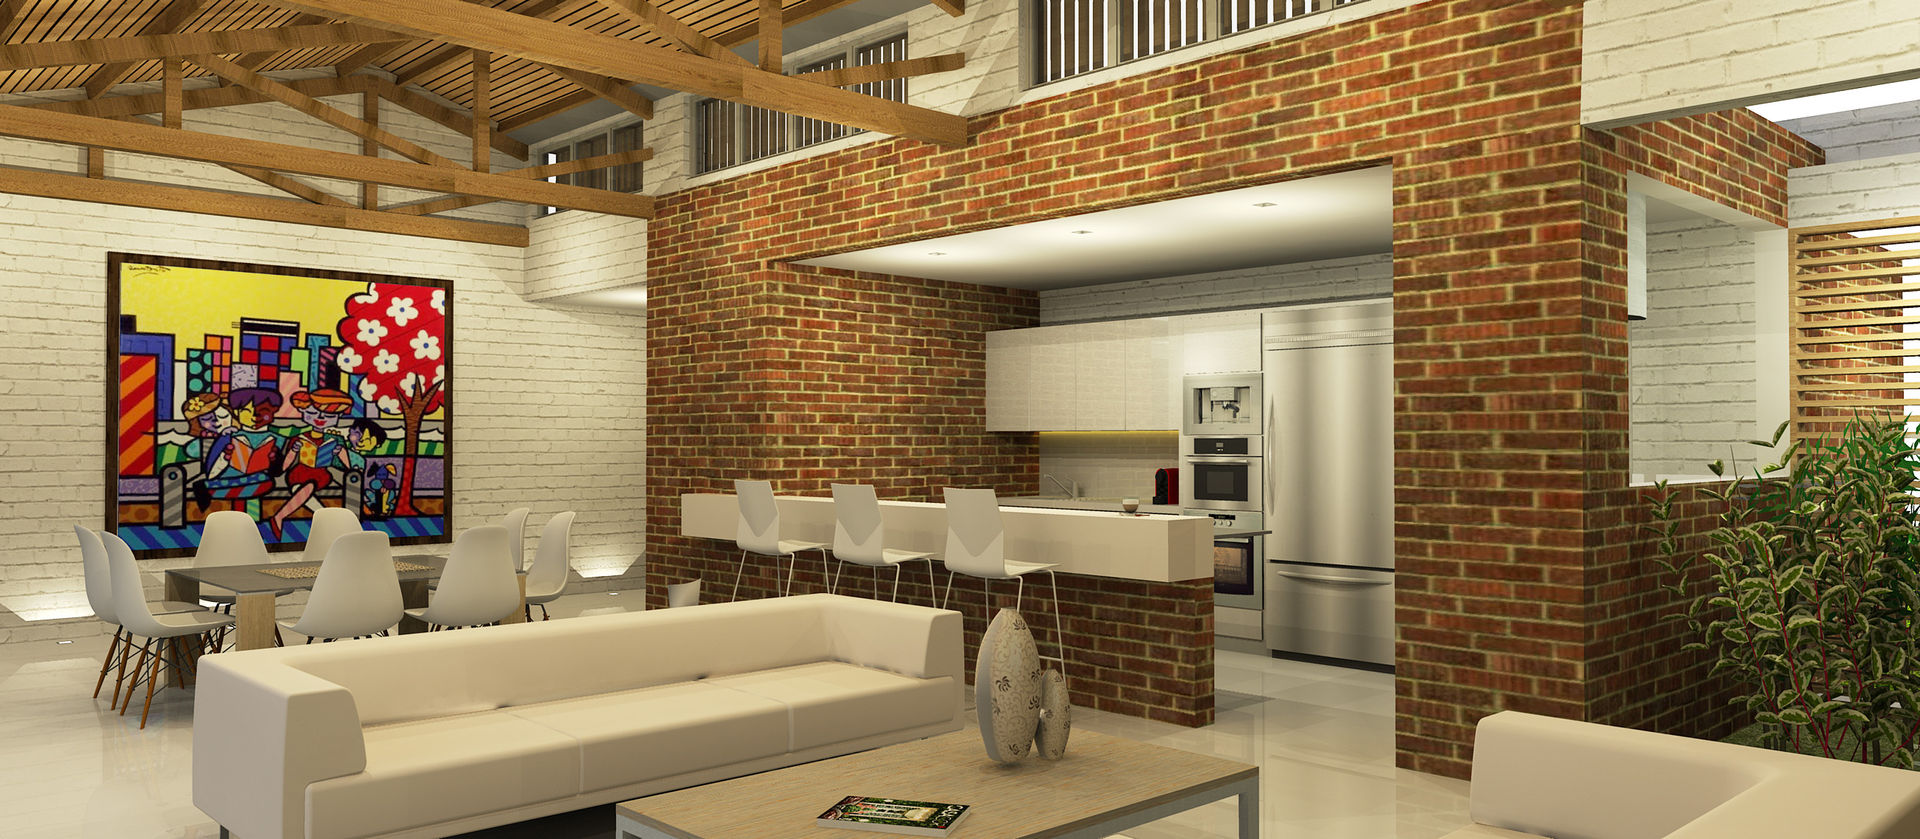 Casa La Morada DV COLECTIVO CREATIVO Cocinas modernas zona social,ventilacion,cubierta tradicional,blanco,ladrillo,sala